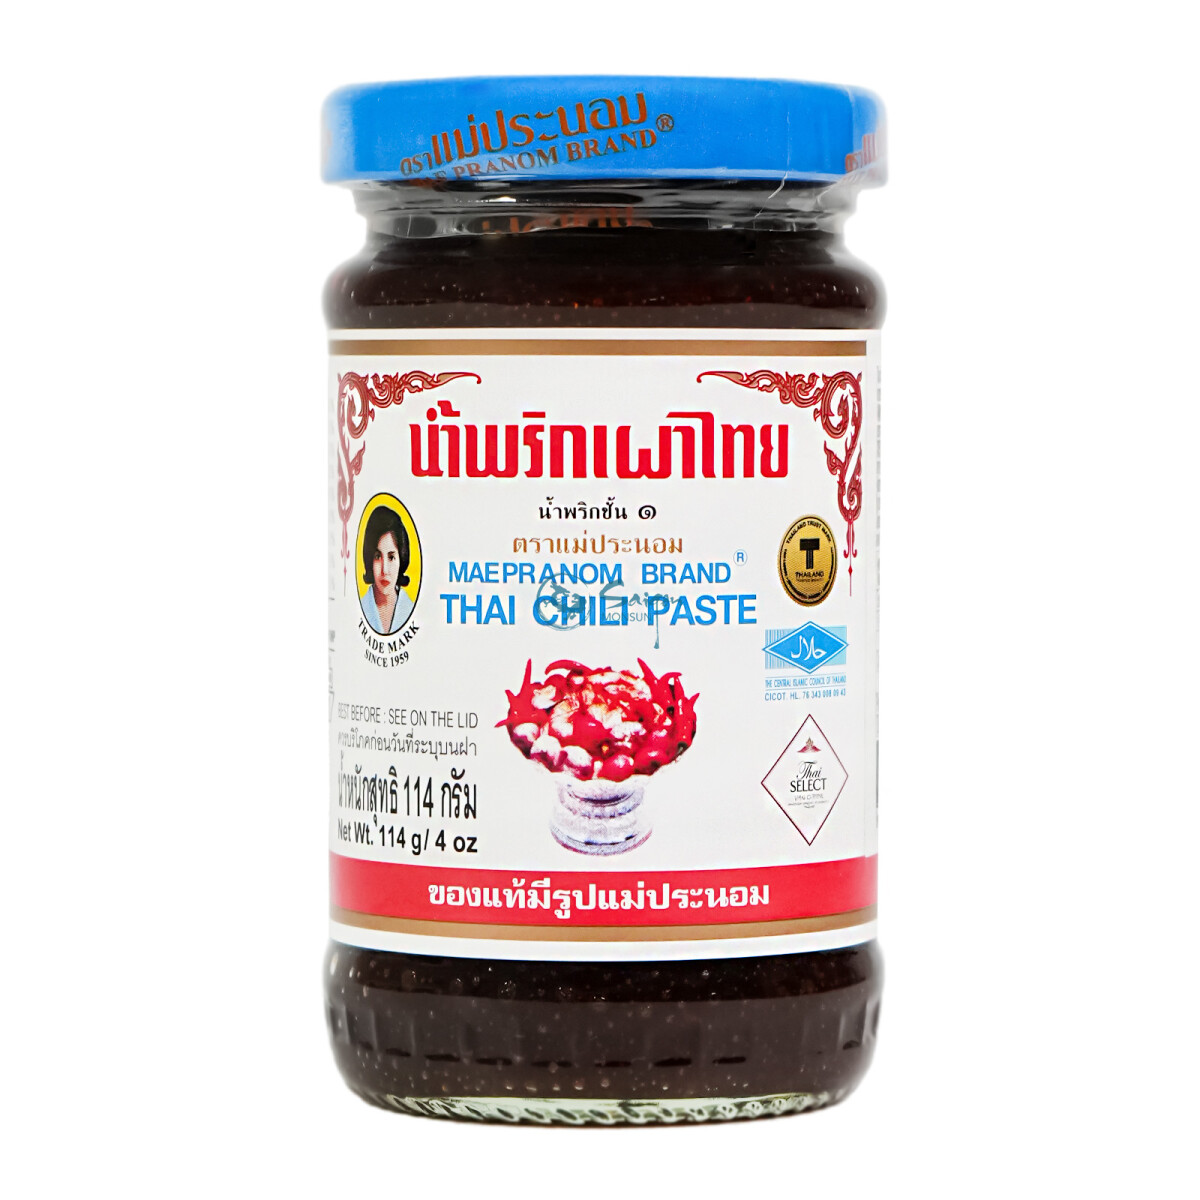 Mae Pranom Thailändische Süsse Chilipaste Nam Prik 114g, 1 